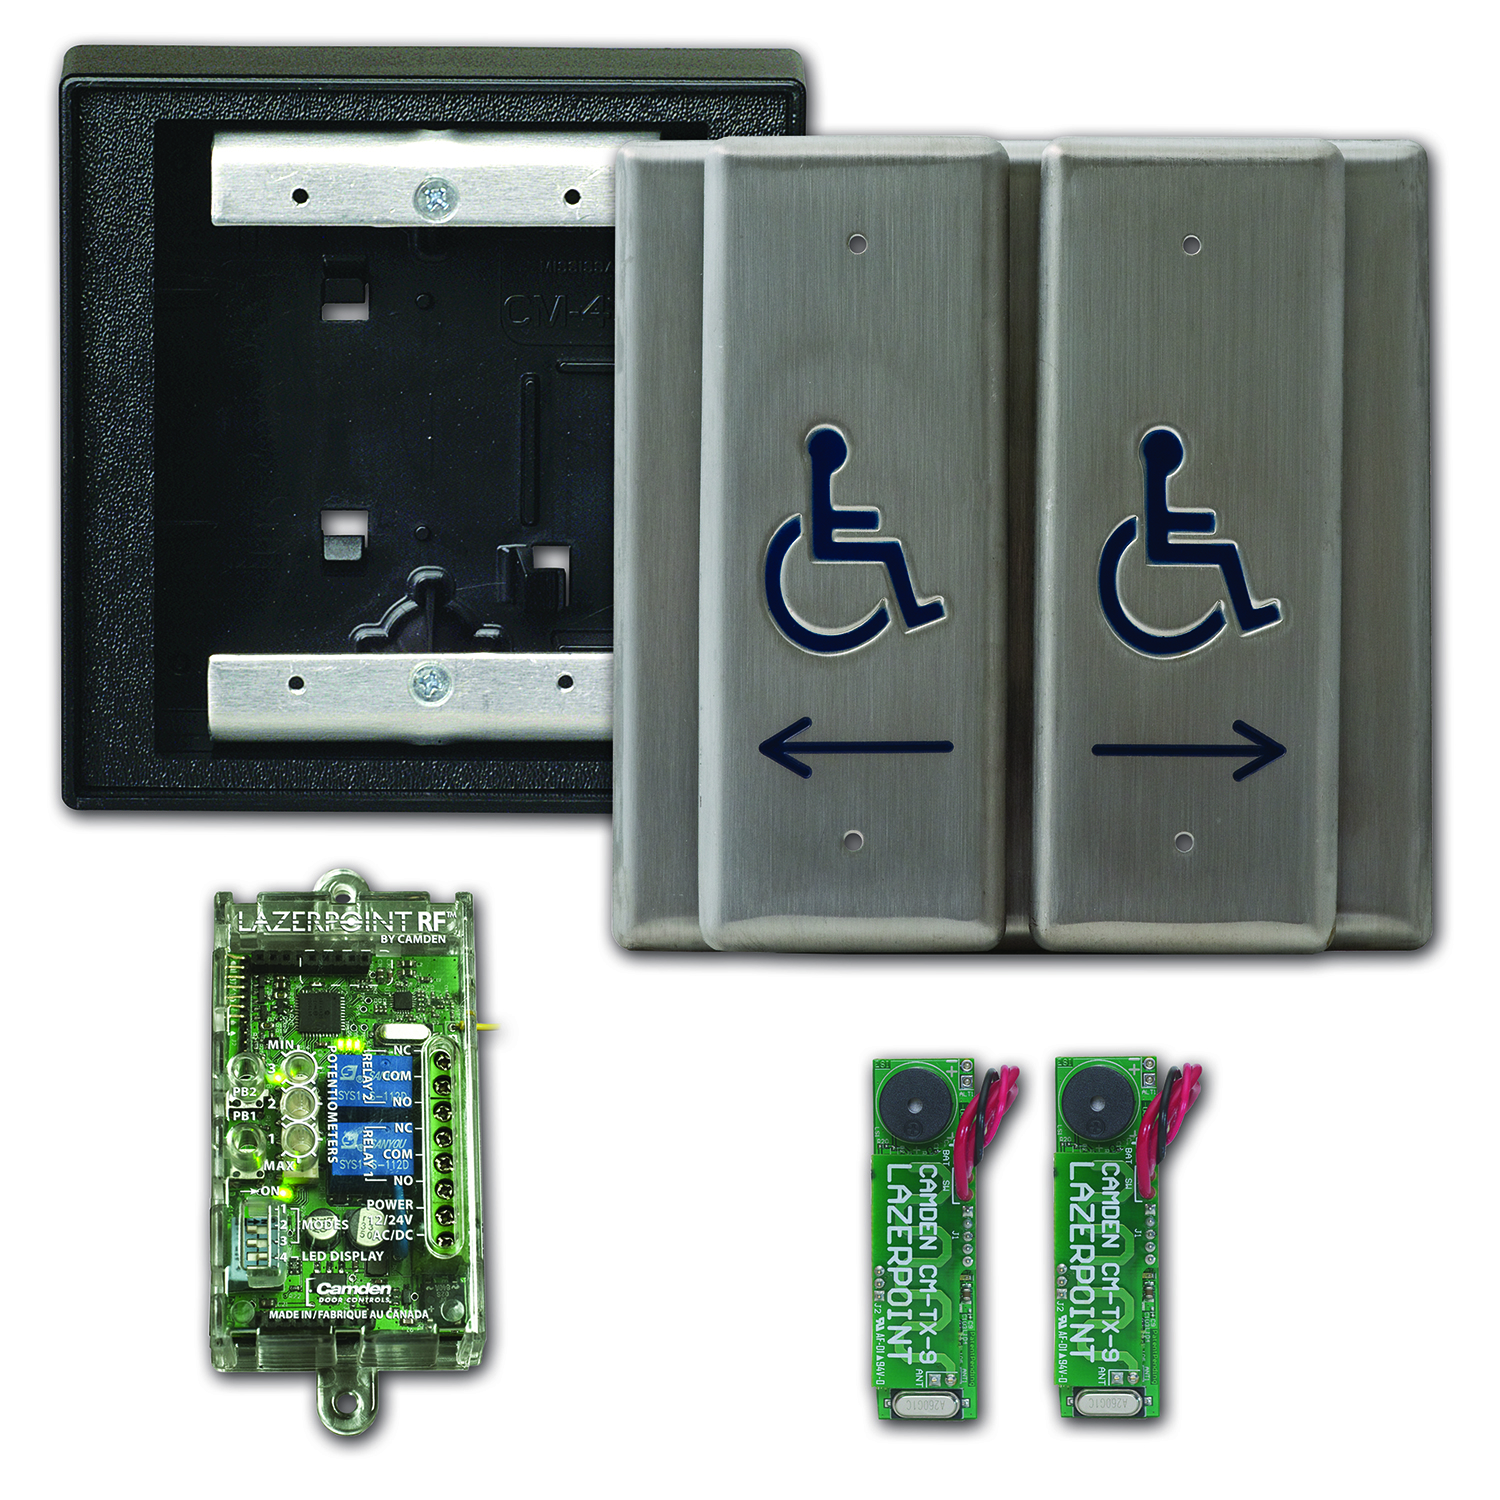 CM-9800: Interruptor de salida/pulsación capacitivo iluminado - Botones Push/Exit - activación